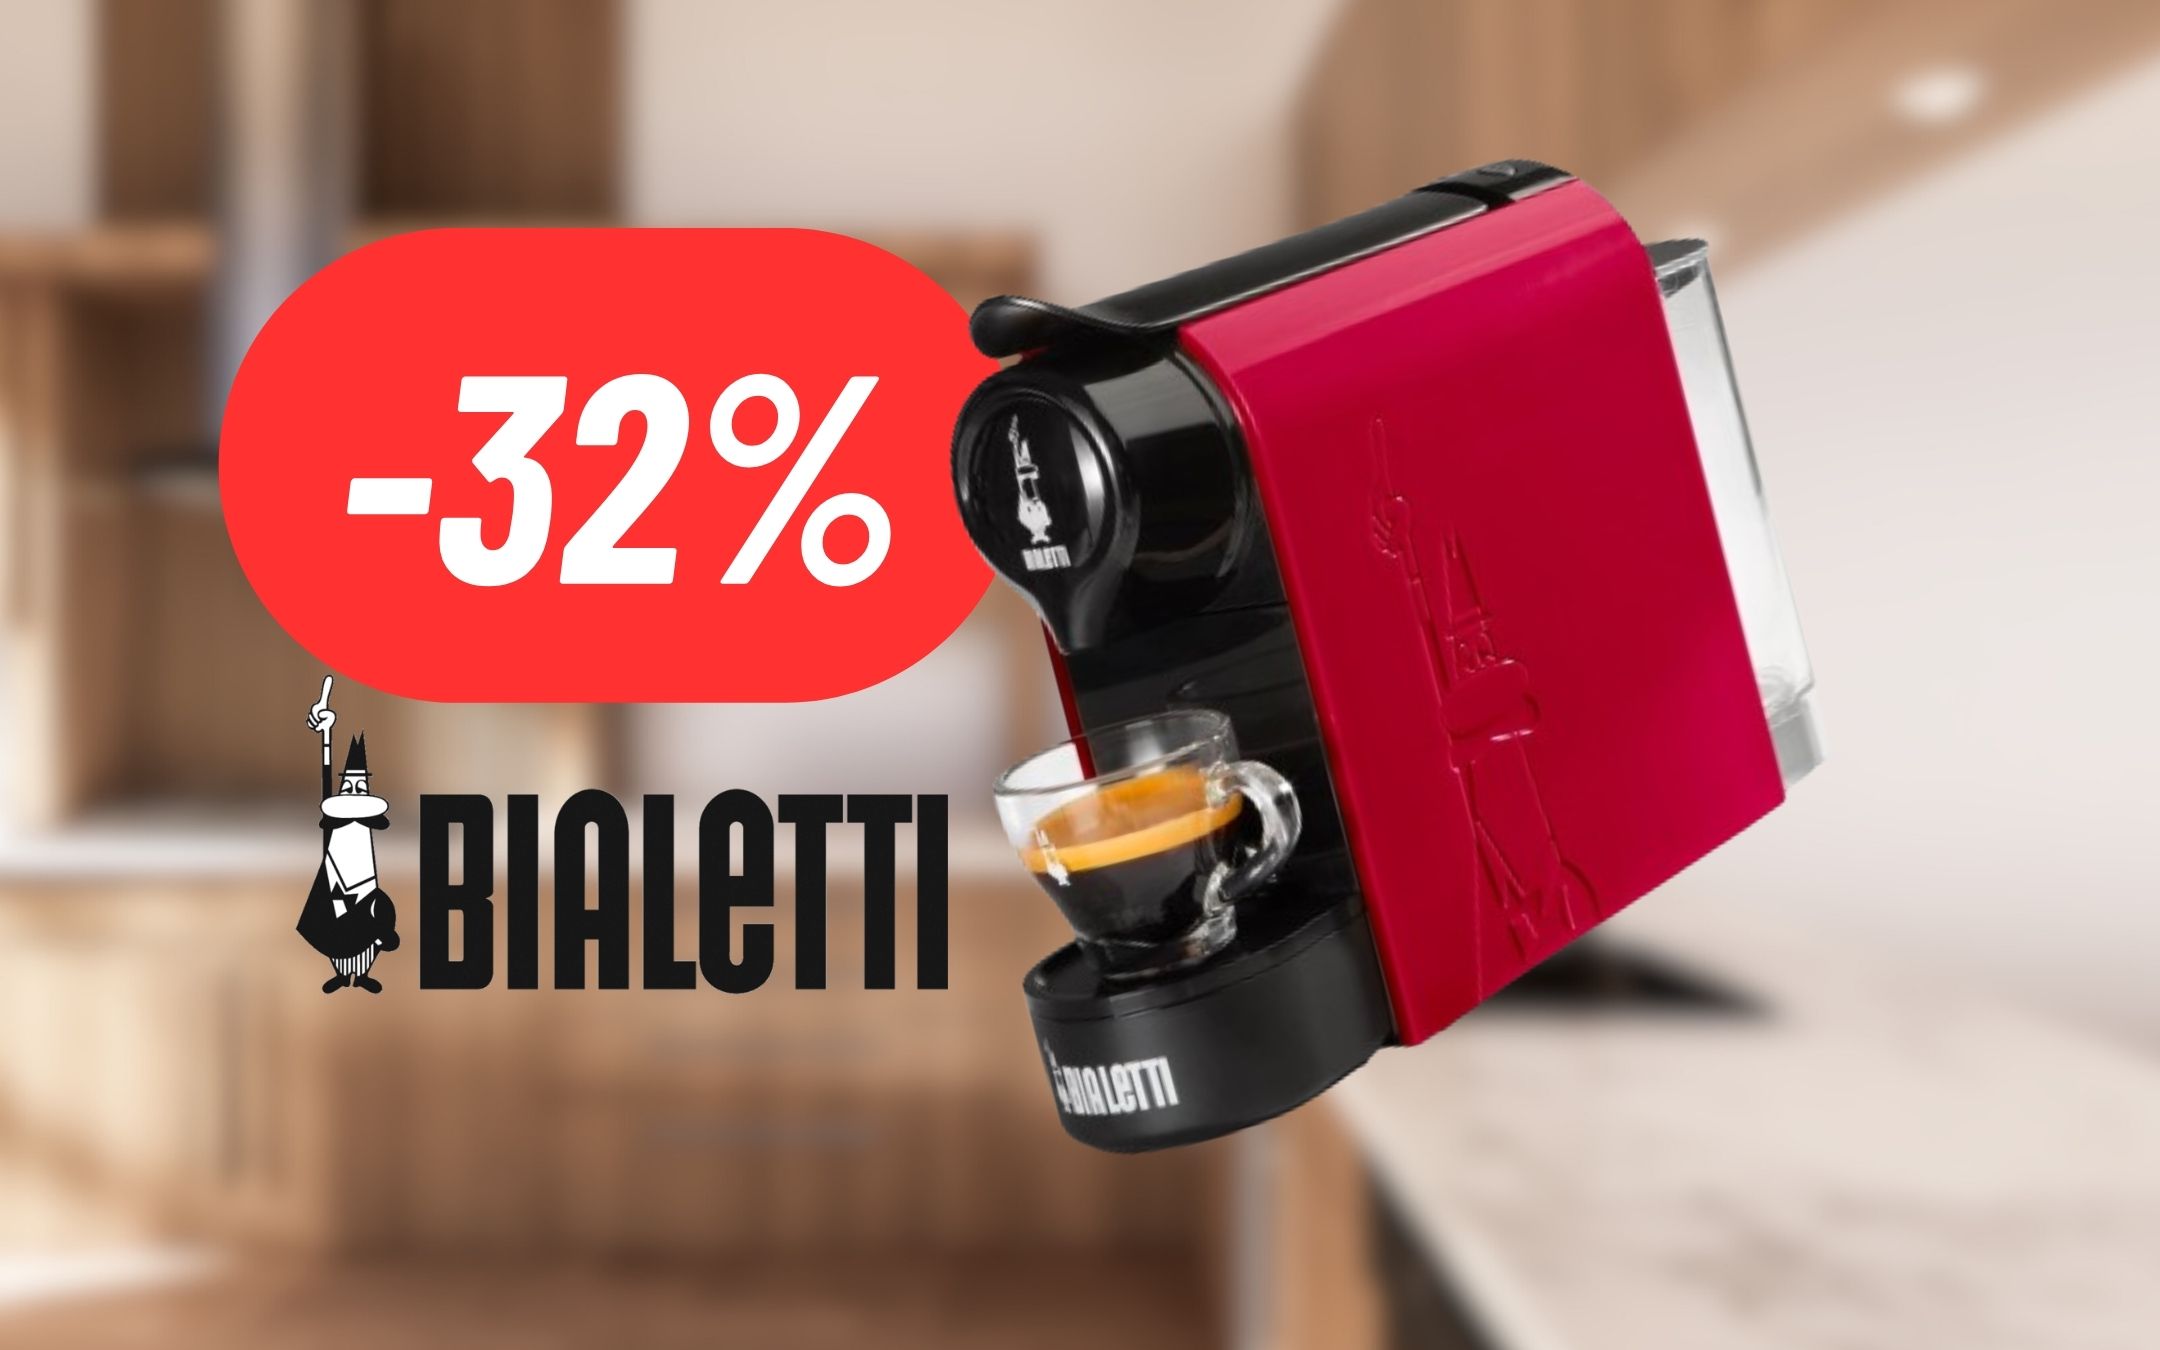 Caffè dal gusto intenso con la Macchina Bialetti Gioia al 23% DI SCONTO:  OFFERTISSIMA